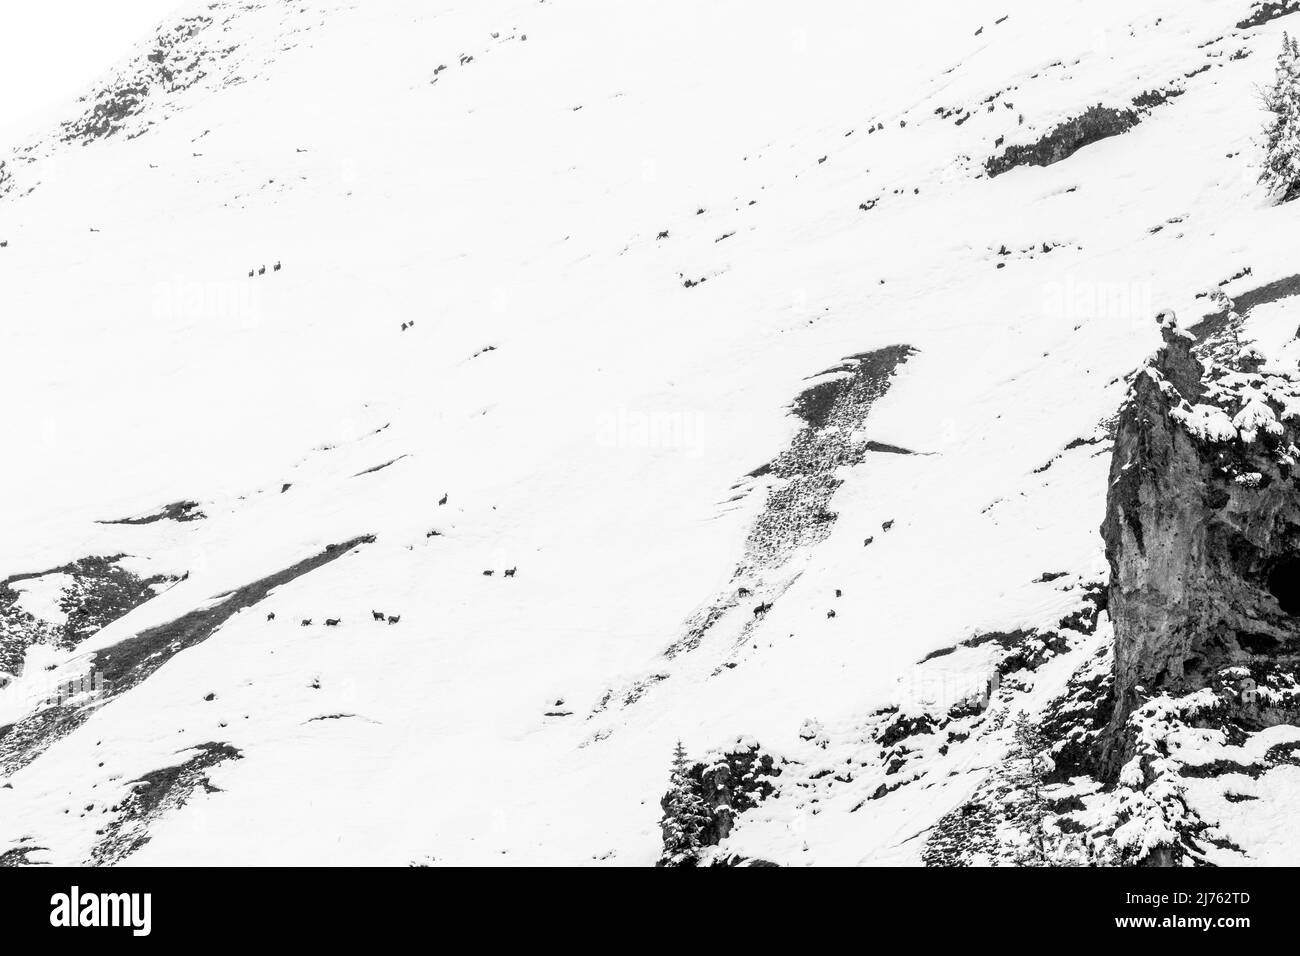 Ein vereinzeltes Gämsenrudel mit jungen im Tiefschnee auf den Hängen des Gamsjoch im Winter, oberhalb des Großen Ahornbodens im Karwendel, Tirol in den österreichischen Alpen. Stockfoto